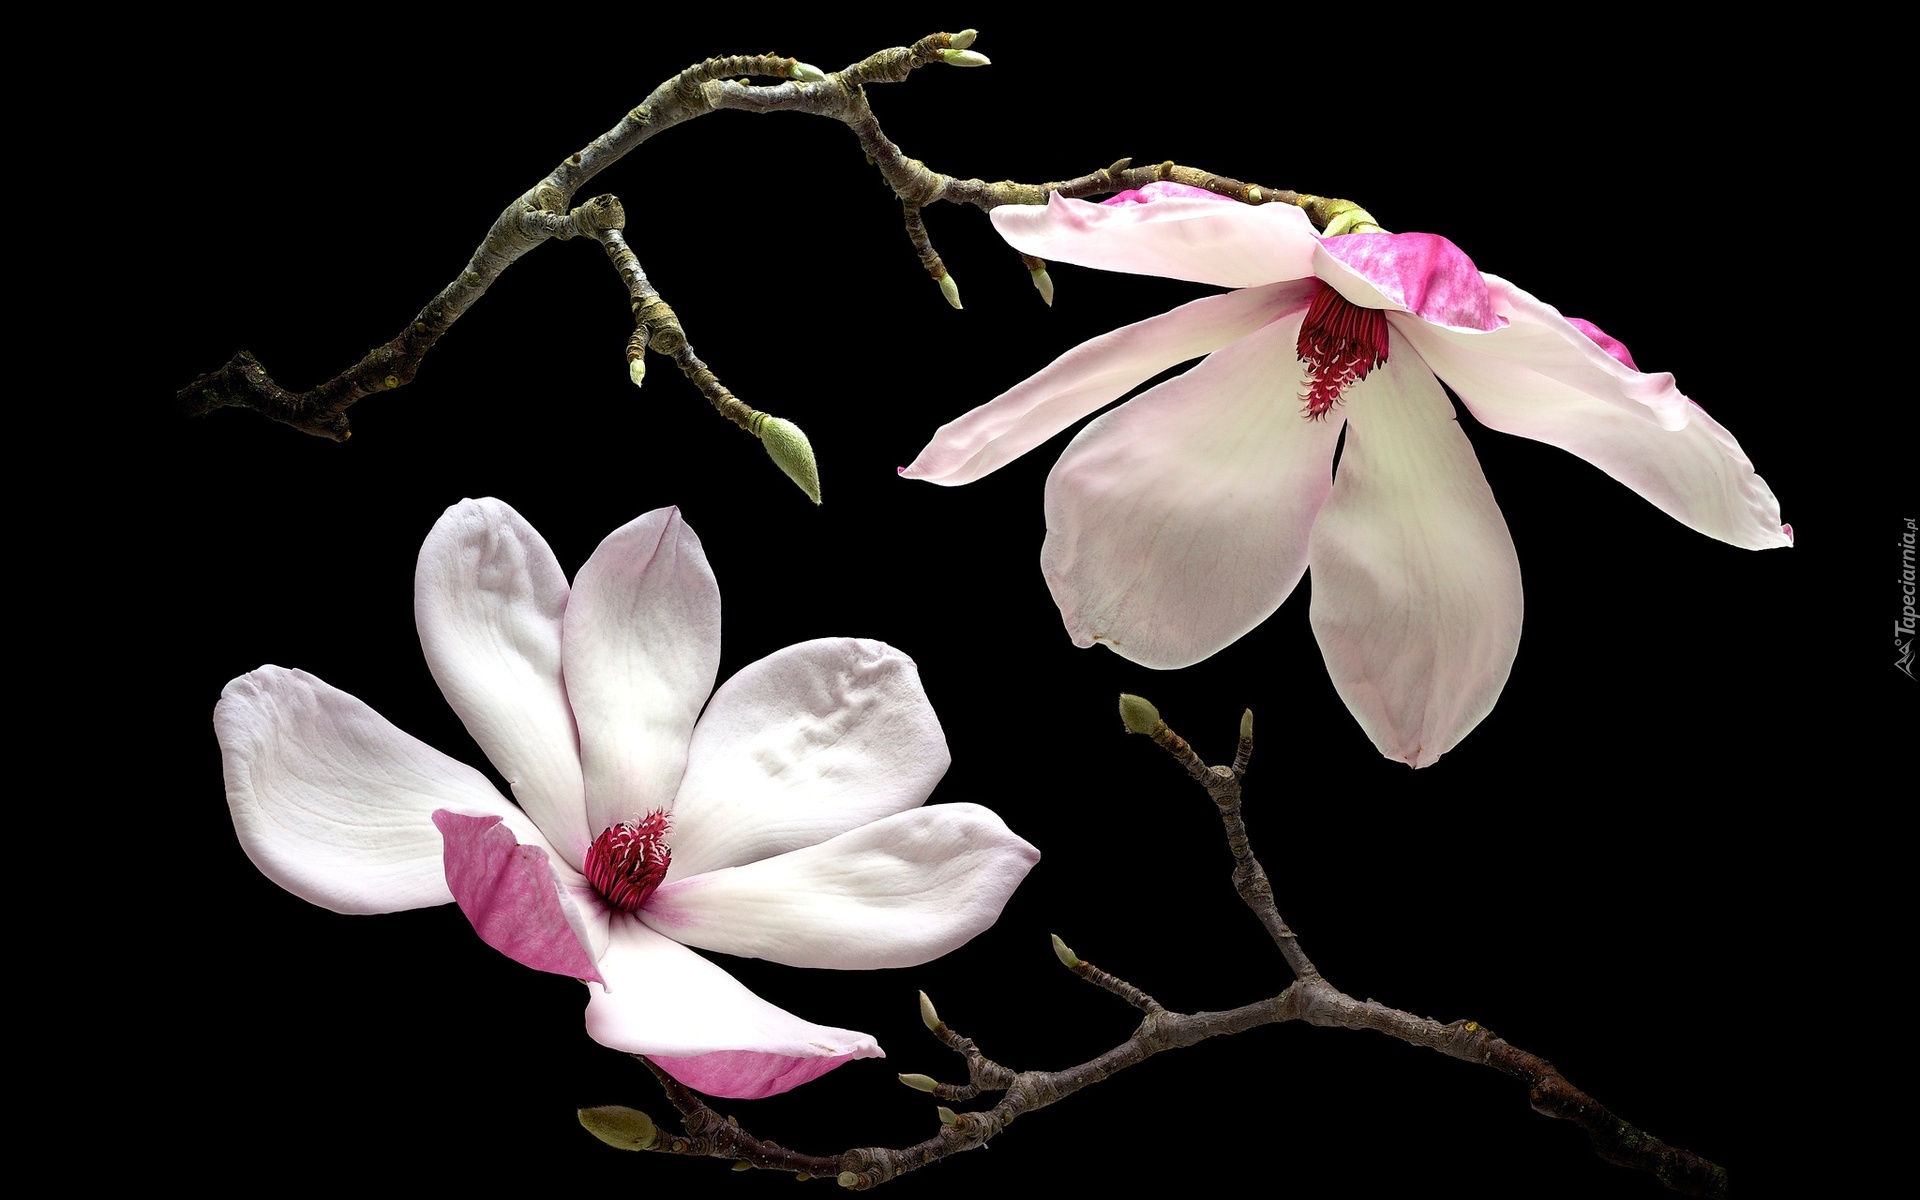 Kwiaty, Magnolia, Gałązki